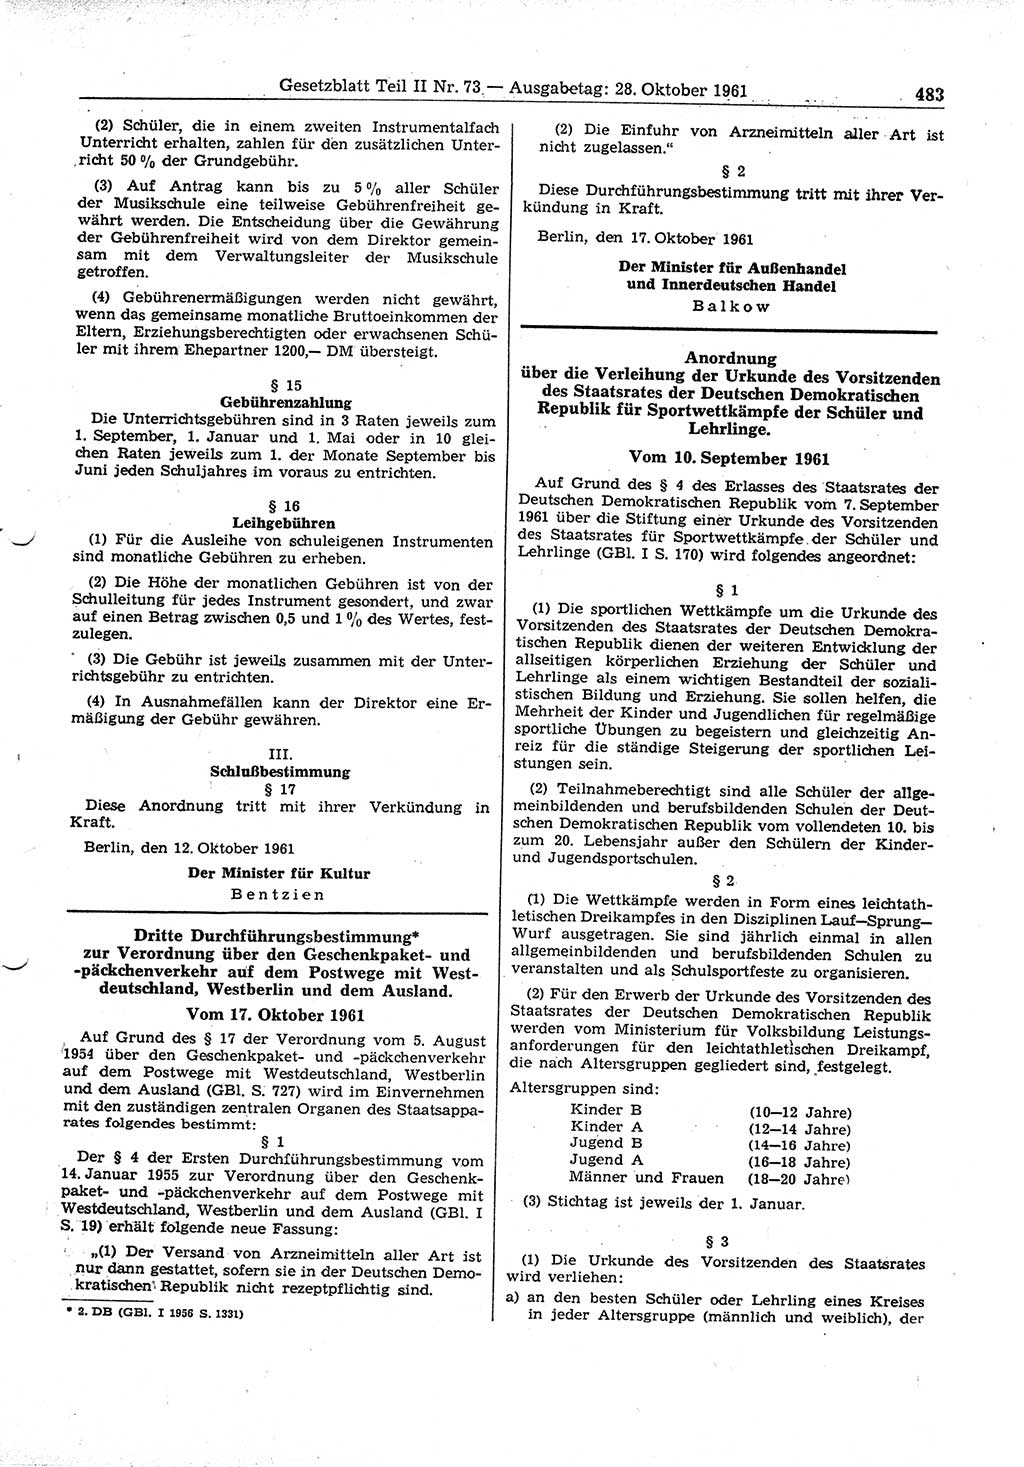 Gesetzblatt (GBl.) der Deutschen Demokratischen Republik (DDR) Teil ⅠⅠ 1961, Seite 483 (GBl. DDR ⅠⅠ 1961, S. 483)